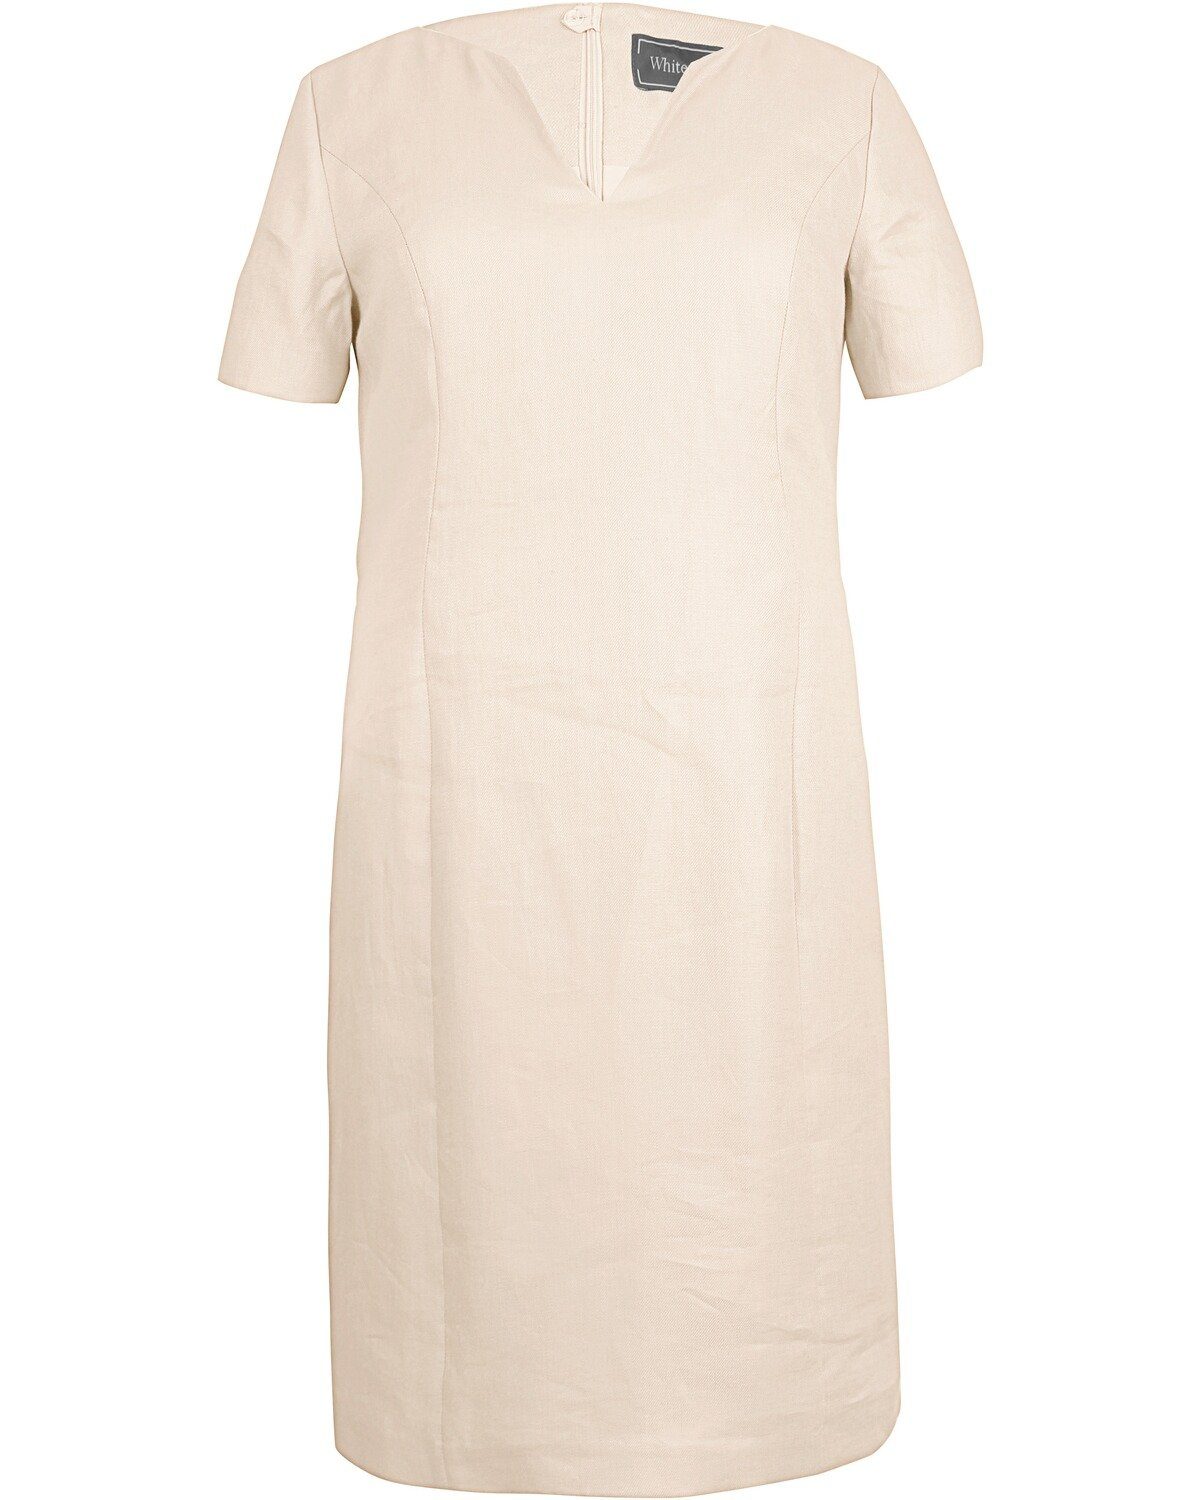 White Label Etuikleid Leinenkleid Weiß